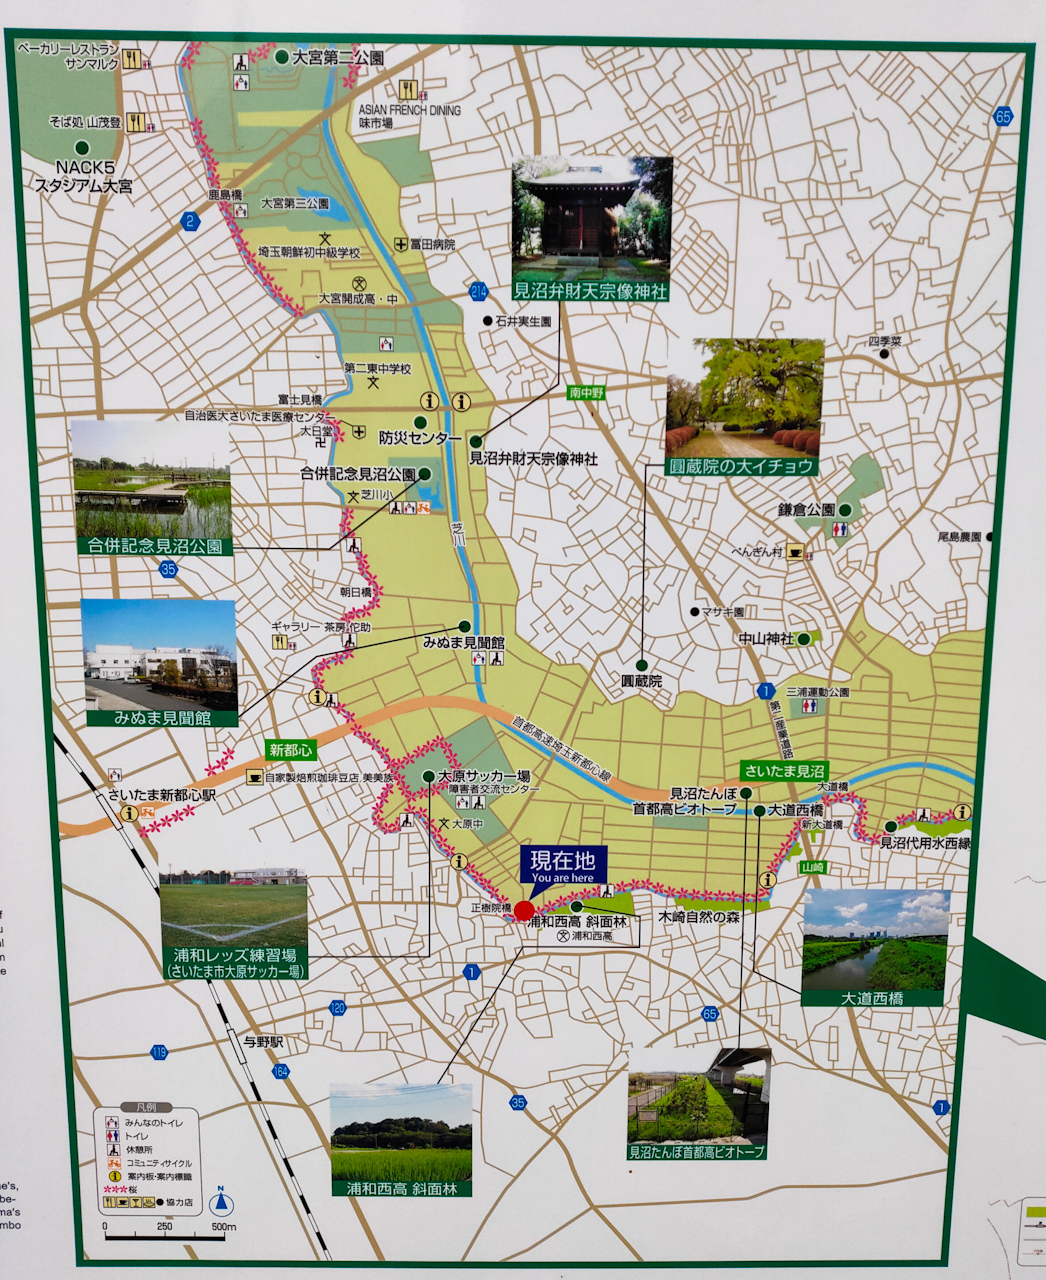 地図上には見沼田んぼ桜回廊の場所を示す桜のマークが付けられています。